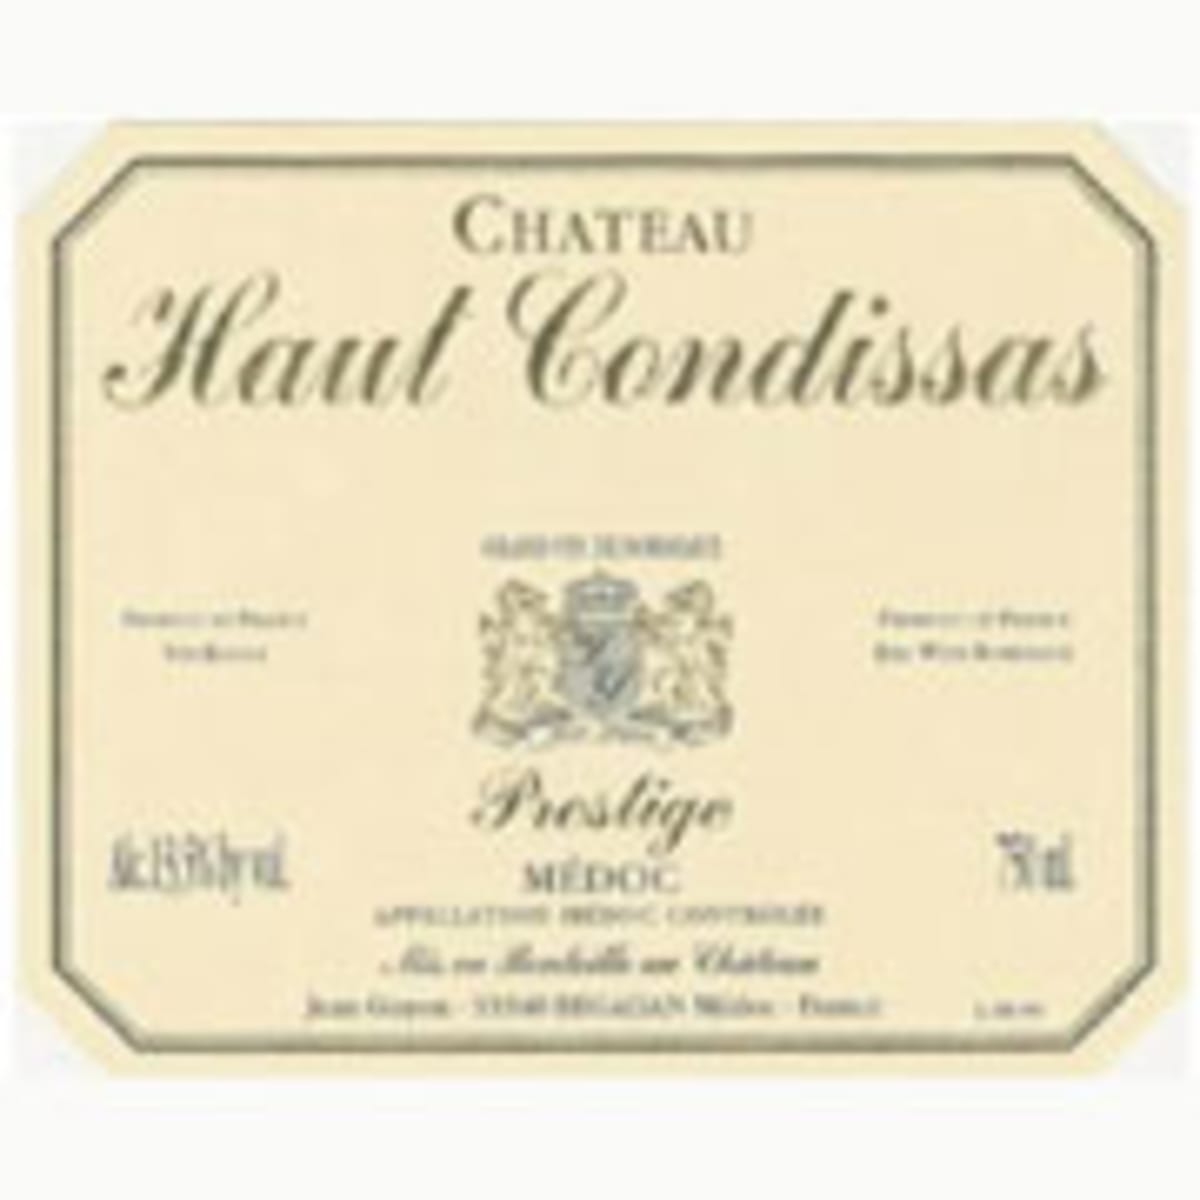 Chateau Haut Condissas  2003 Front Label